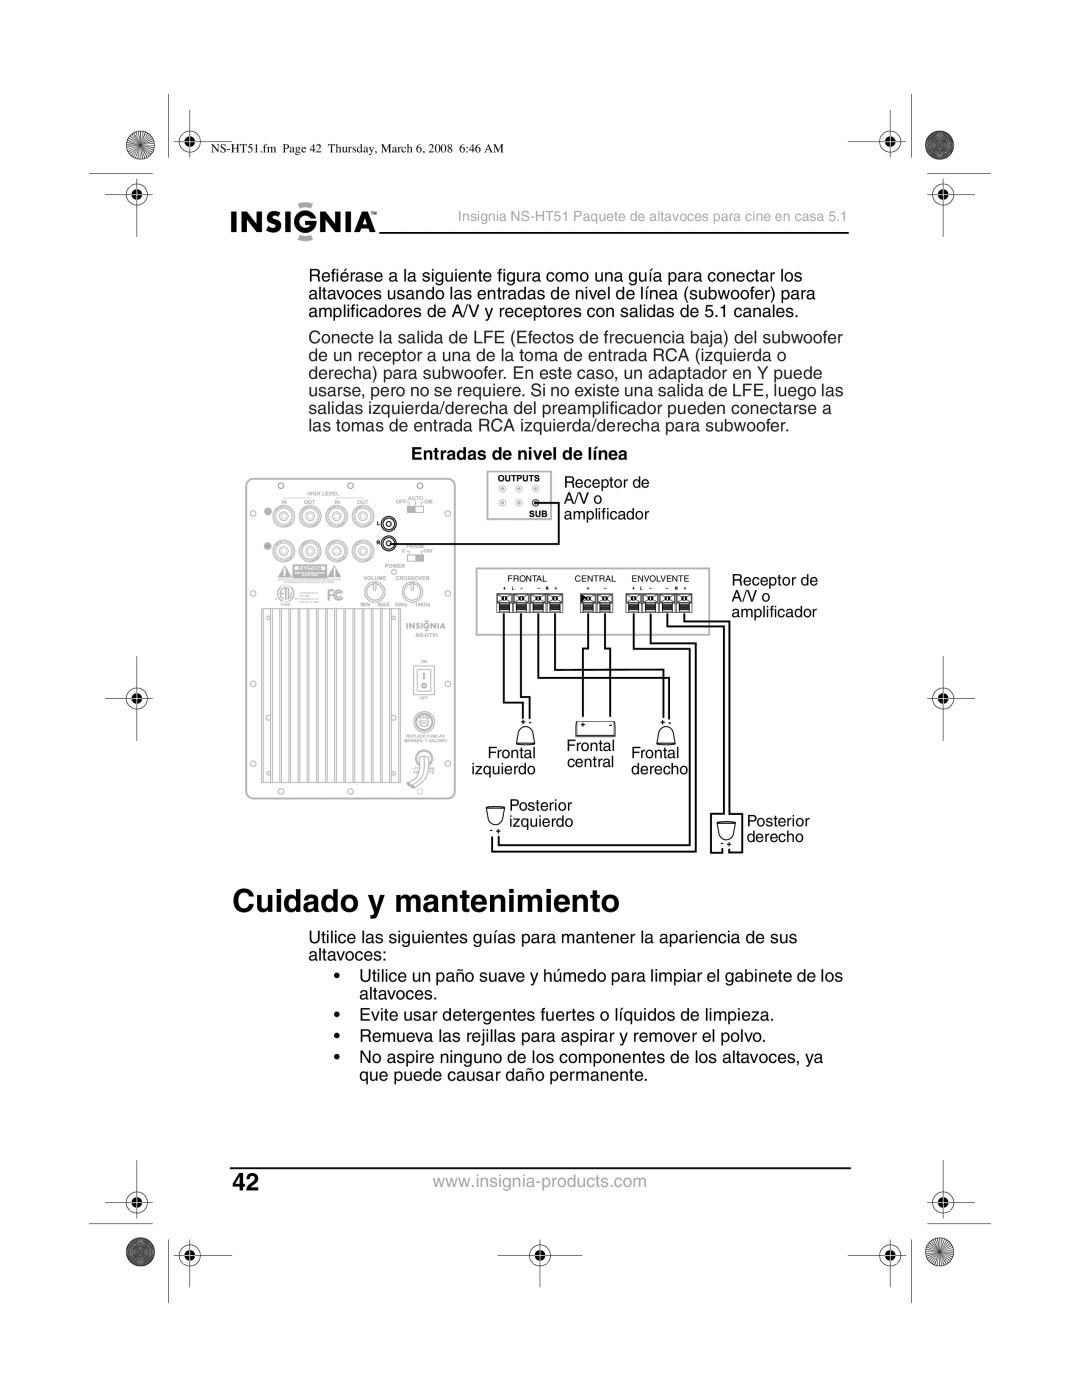 Insignia NS-HT51 manual Cuidado y mantenimiento, Entradas de nivel de línea 